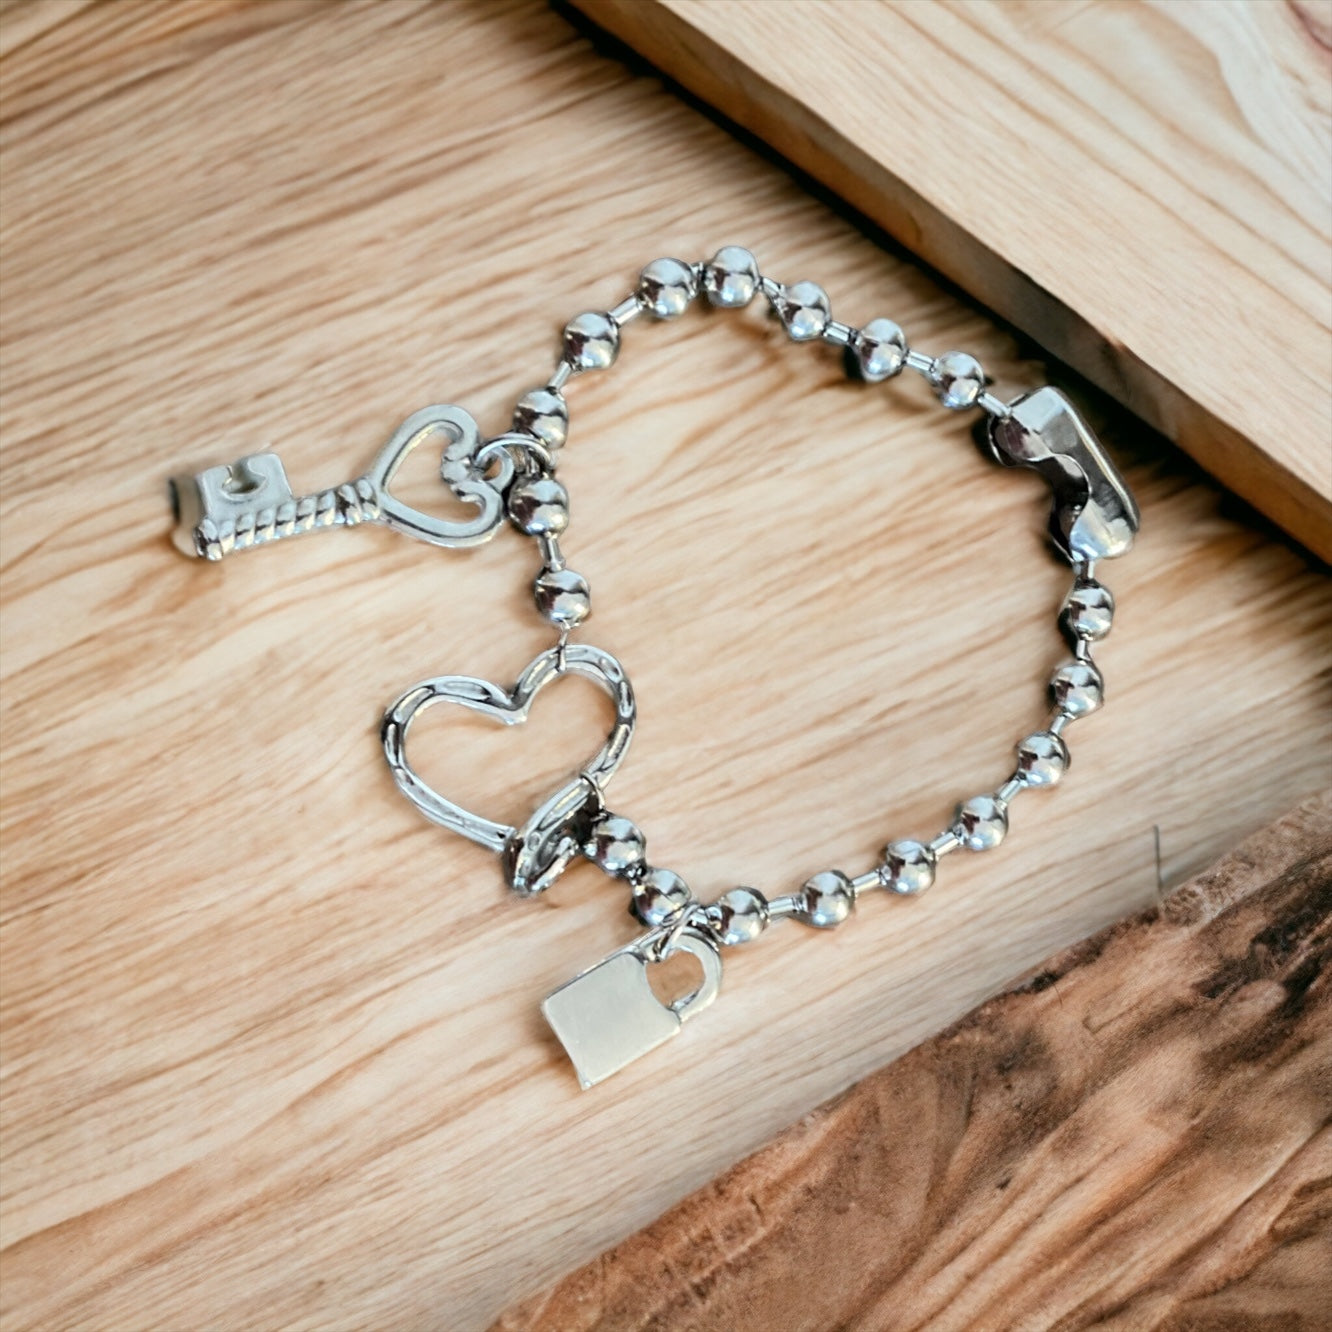 Necklace & Bracelet set